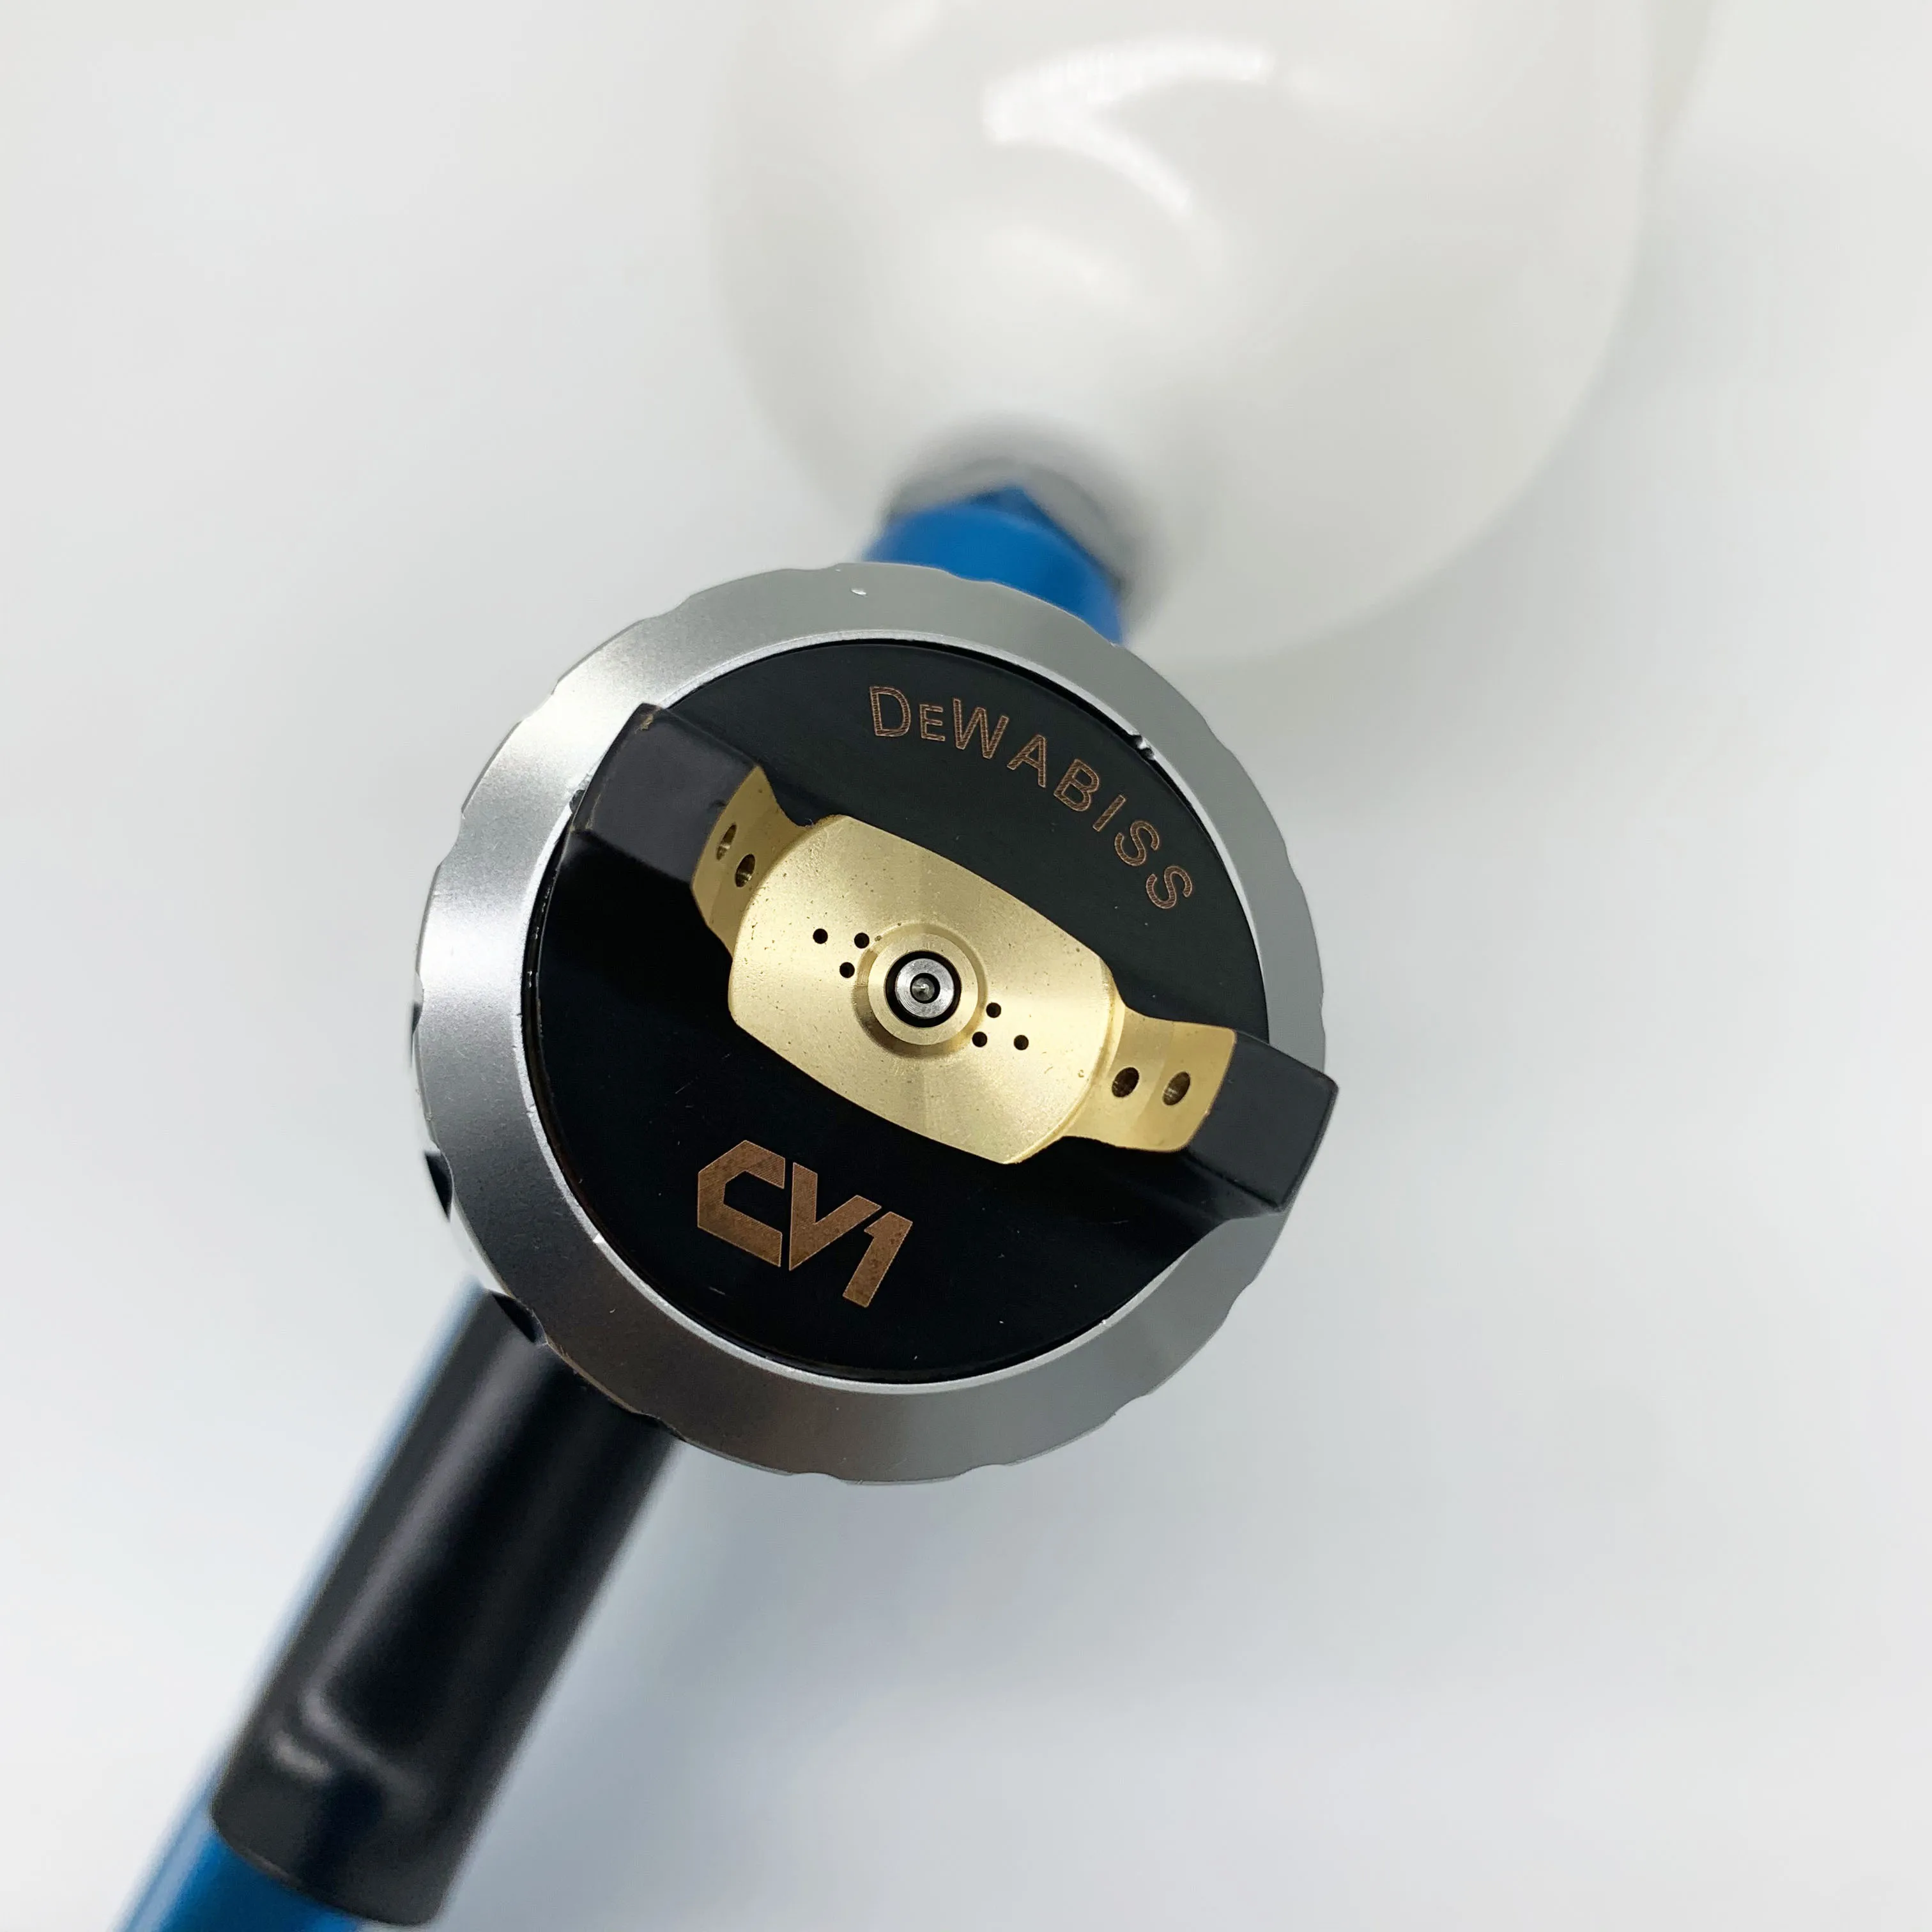 CV1 распылитель дизайн 1,3 мм HVLP безвоздушный распылитель краски автомобиля Аэрограф инструмент на водной основе высокое качество